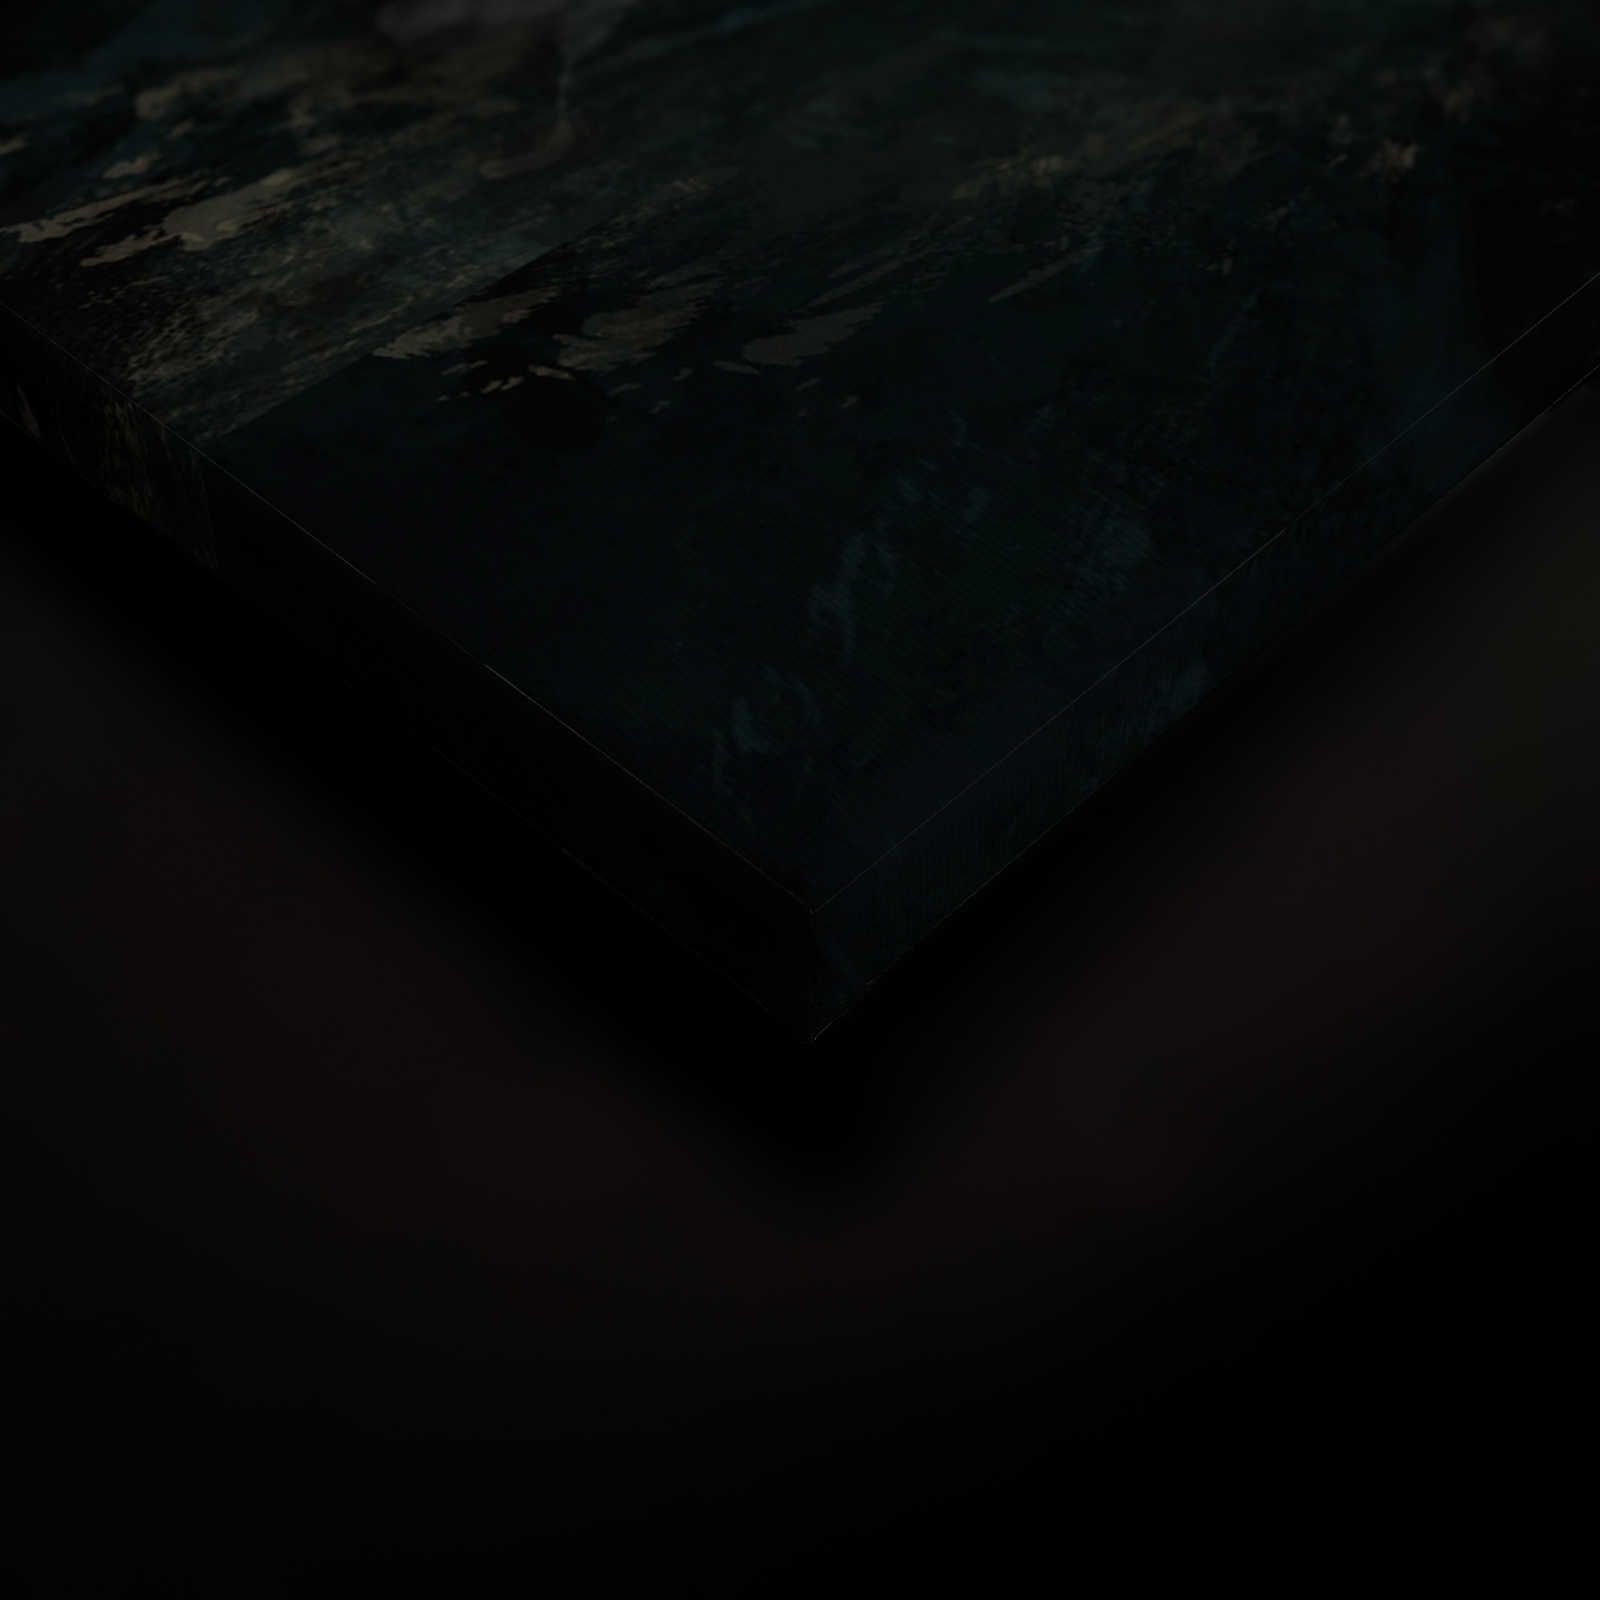             Quadro su tela nera con disegno di balena - 0,90 m x 0,60 m
        